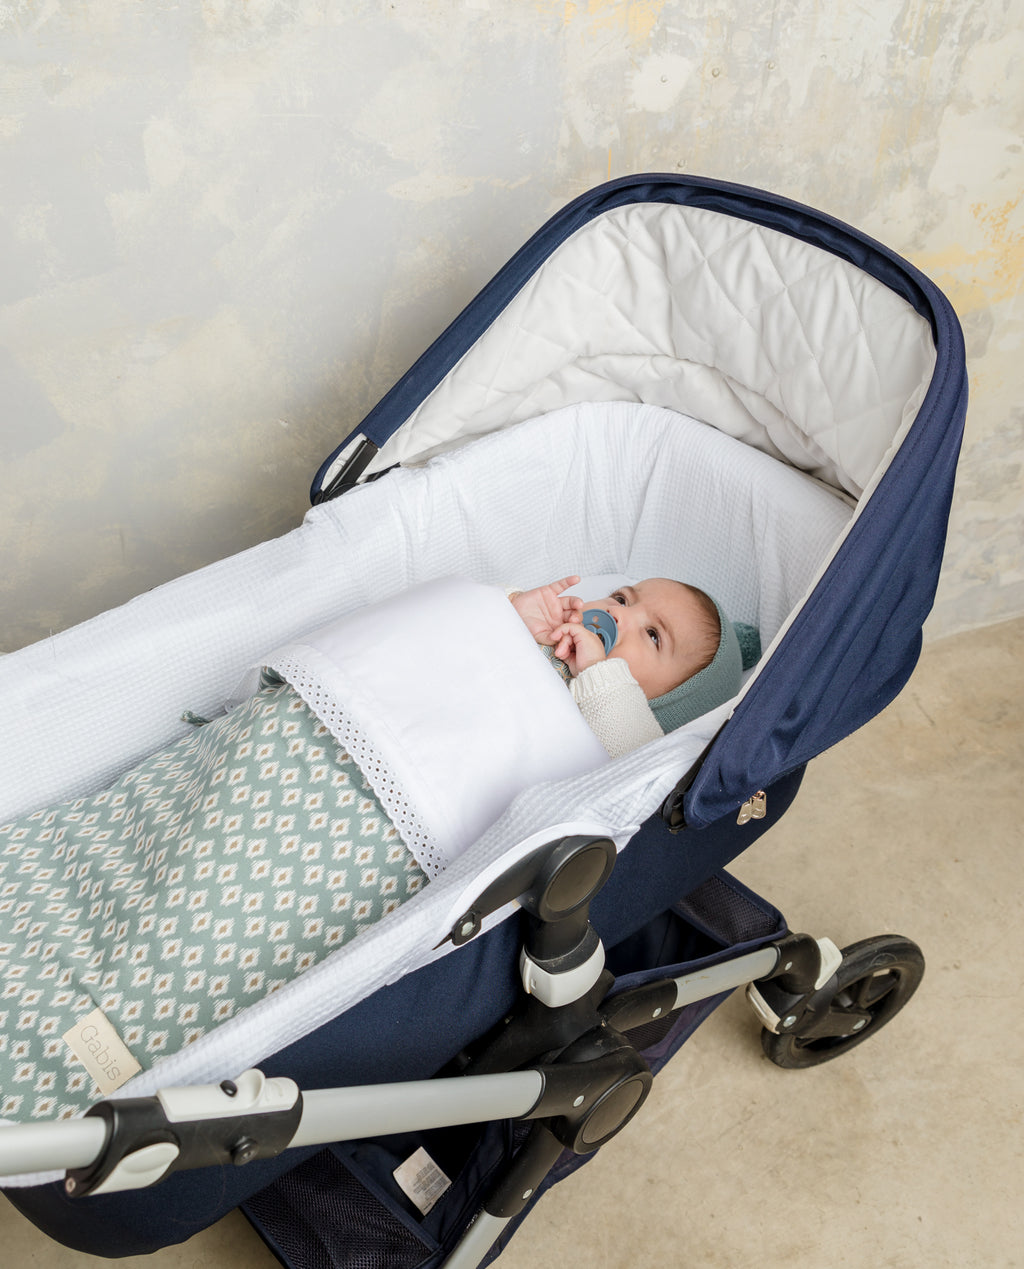 Capazos de bebé para llevar a tu hijo seguro durante los primeros